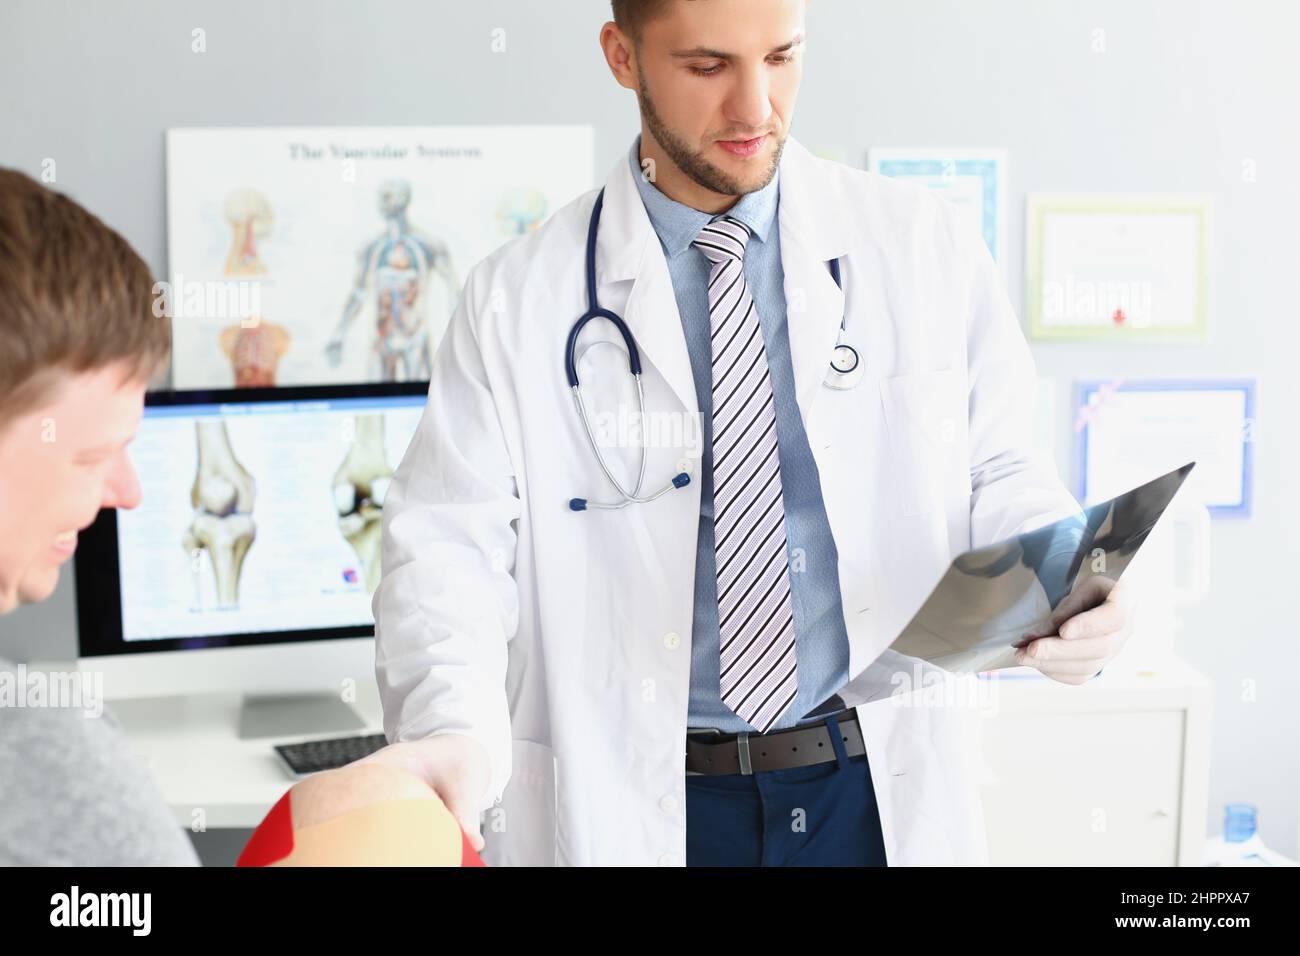 Arzt tragen Uniform und Untersuchung Patienten-Scan, berühren mans Knie Stockfoto